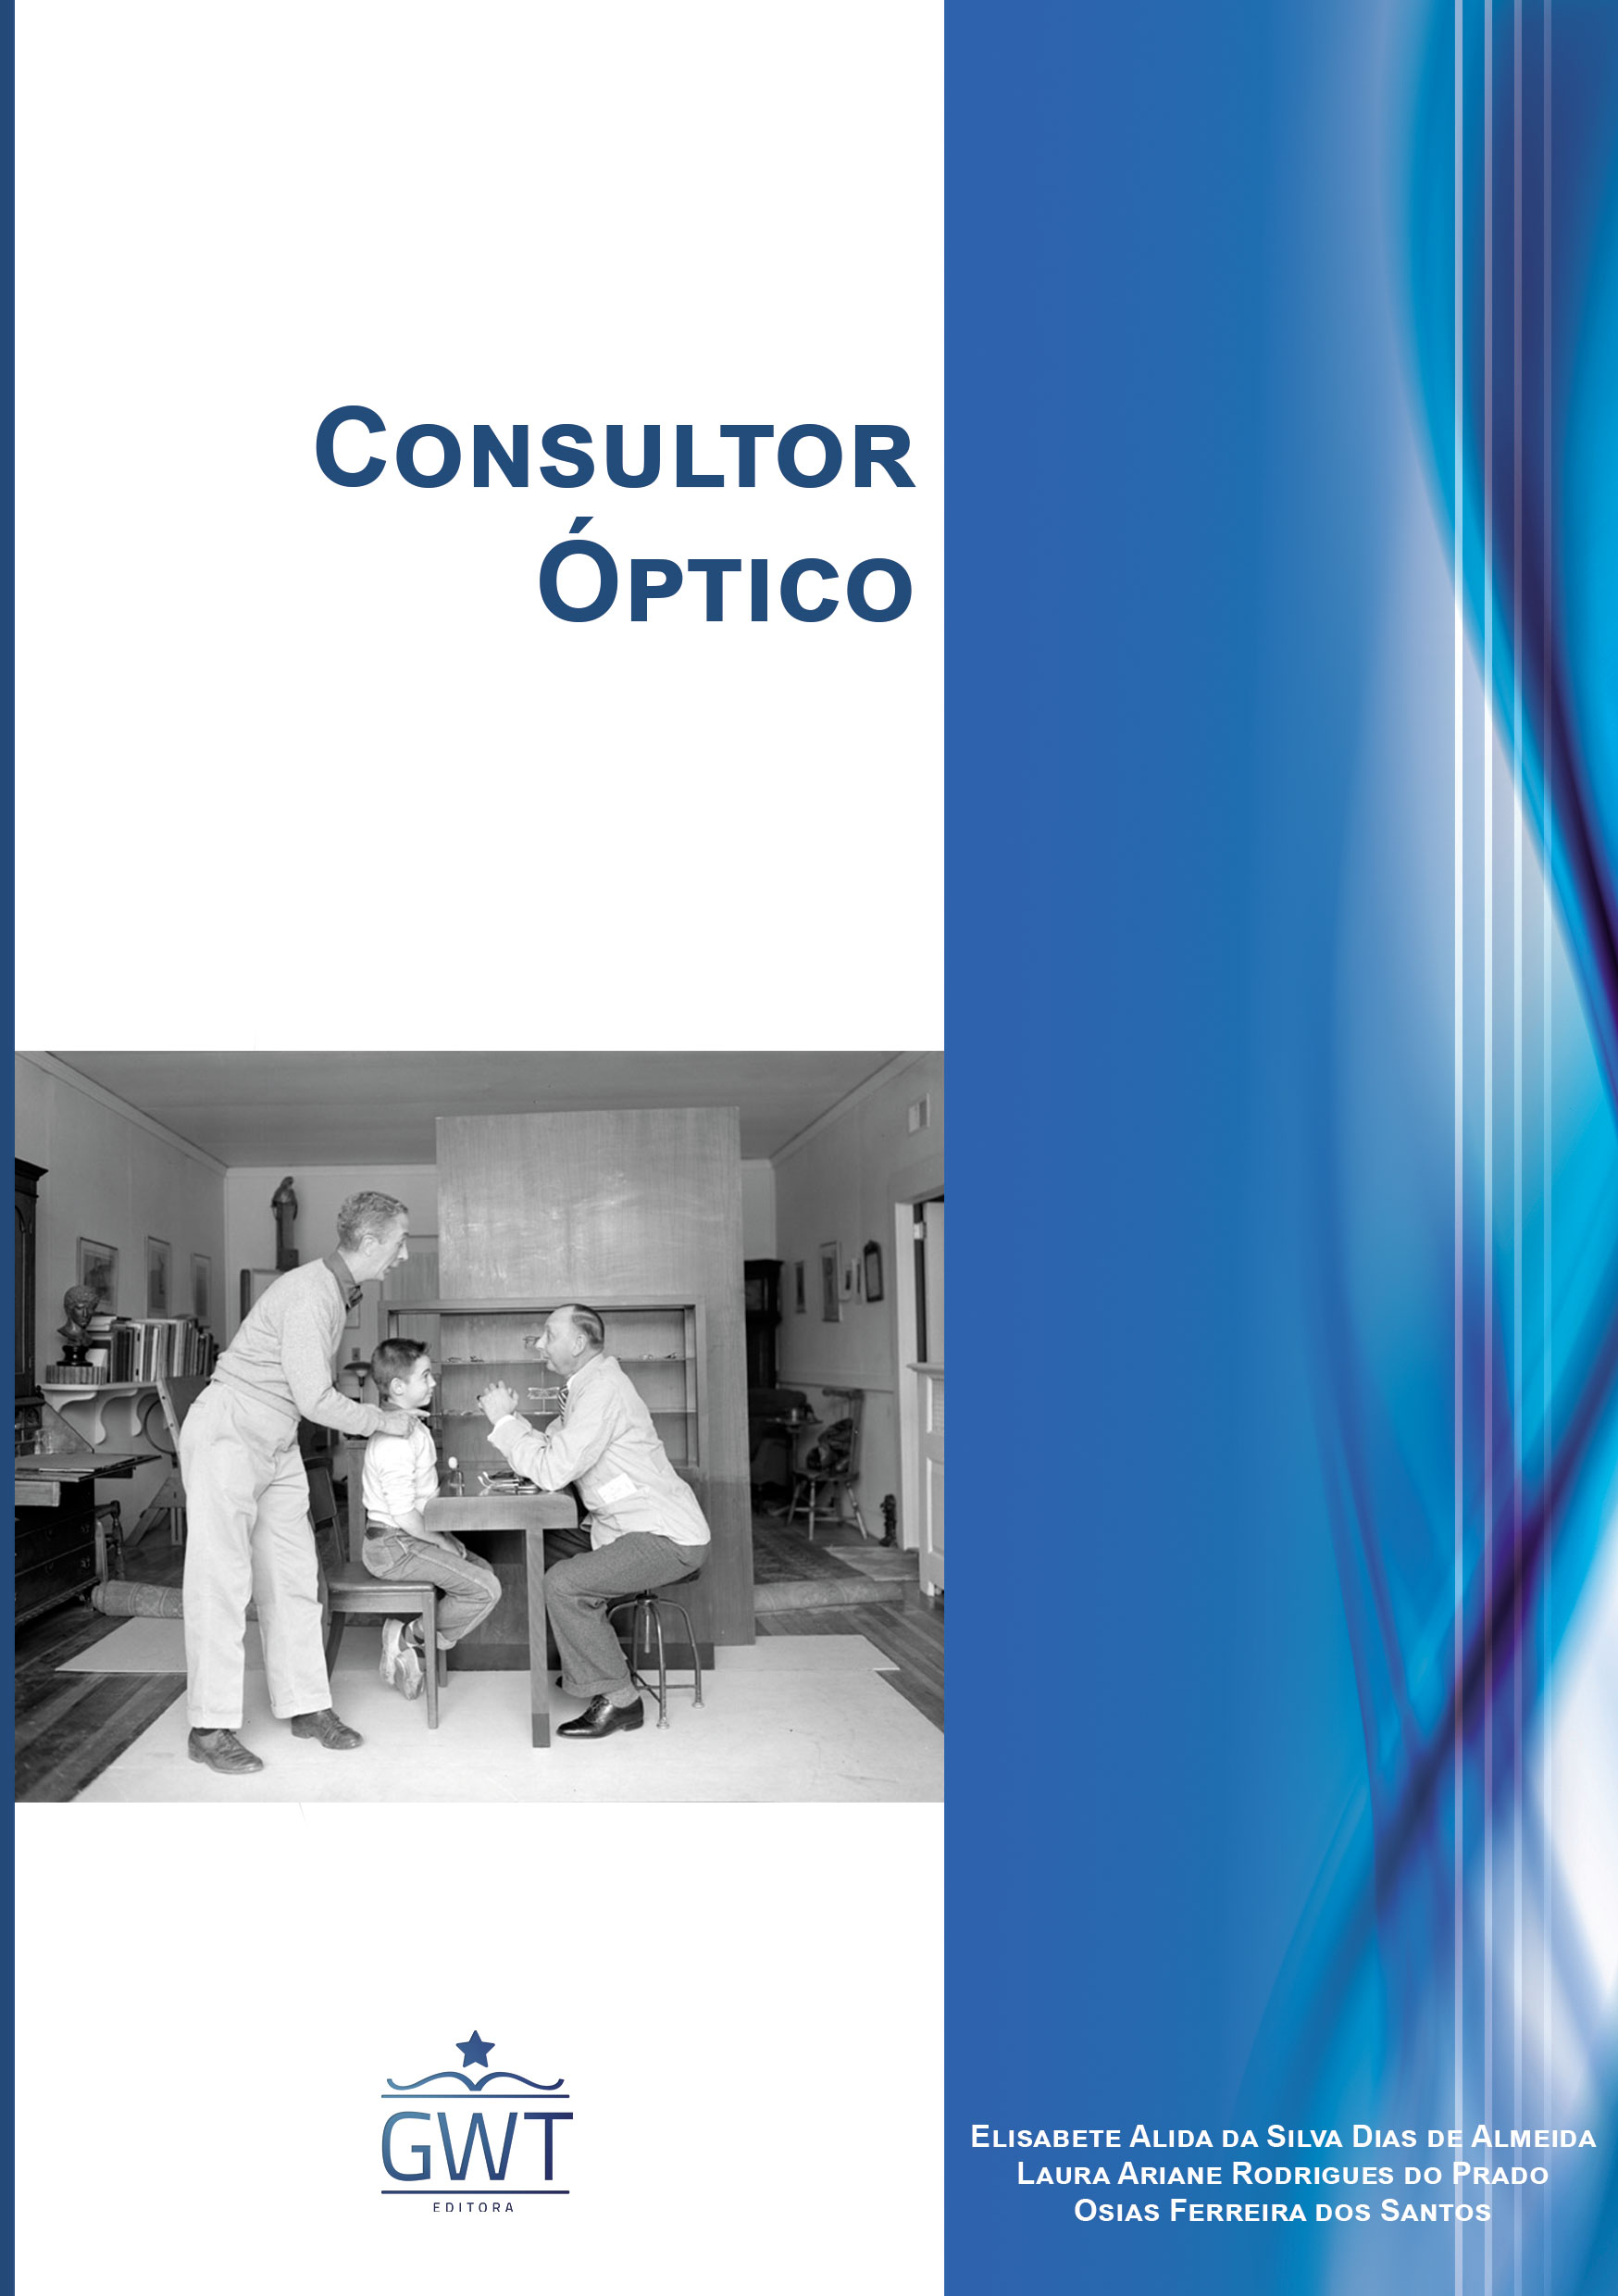 Capa-Consultor-Óptico-nova-logo.jpg